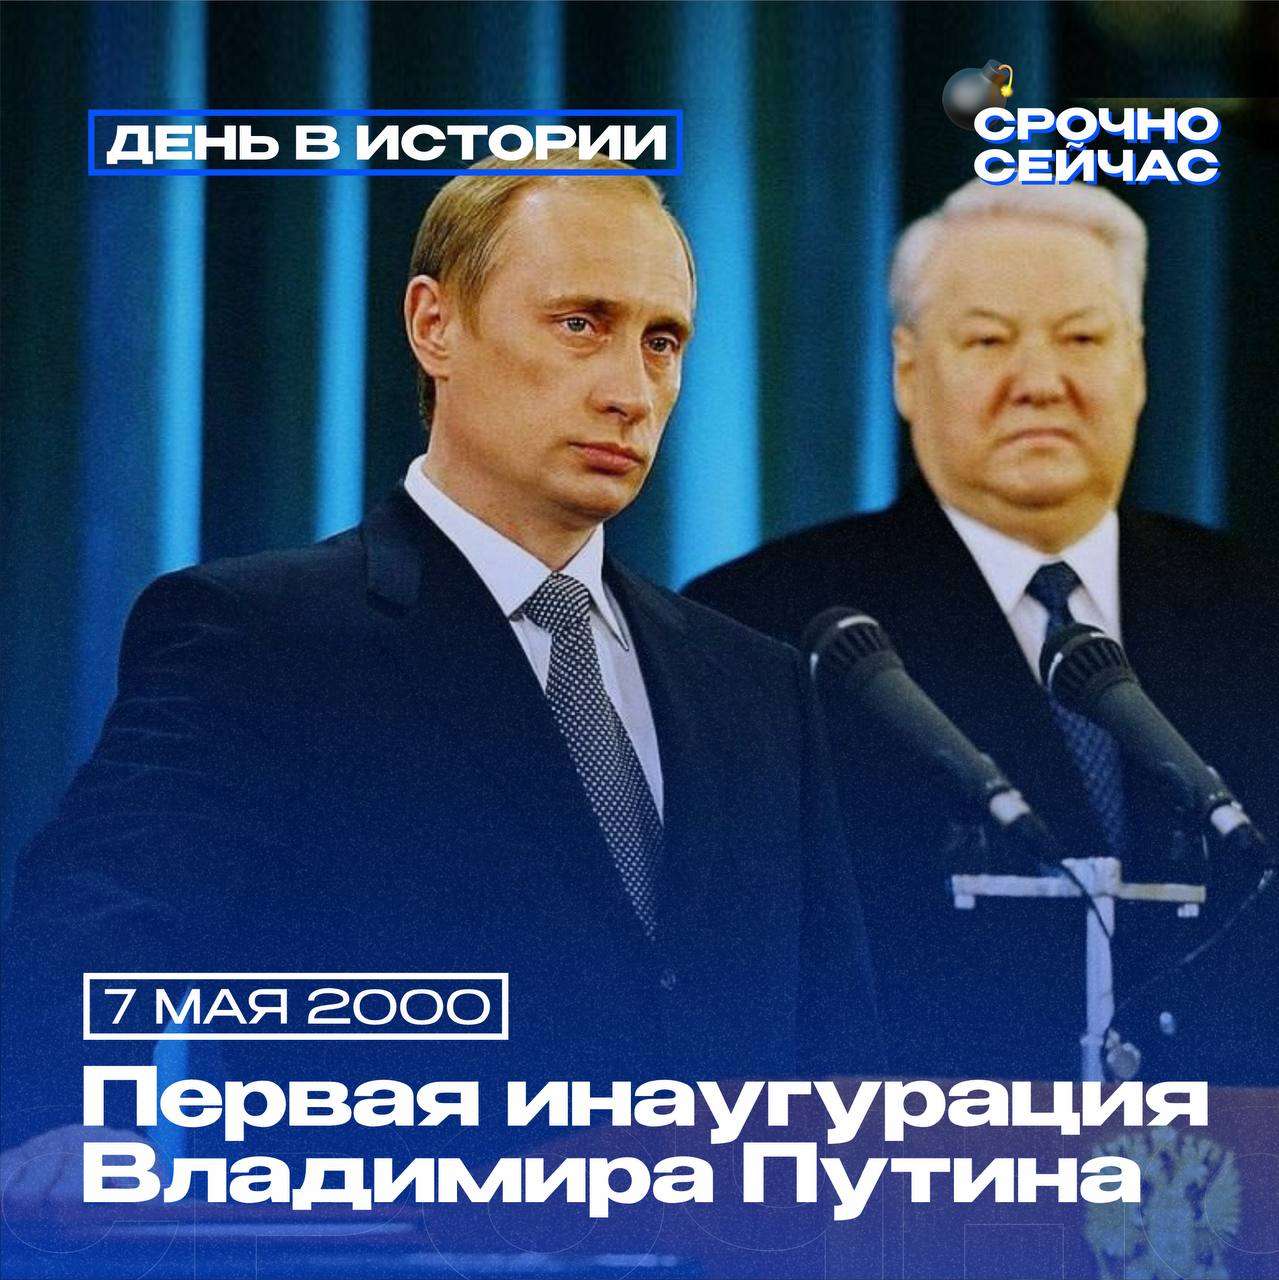 7 мая 2000 года в Кремле состоялась церемония вступления Владимира Путина в должность президента России